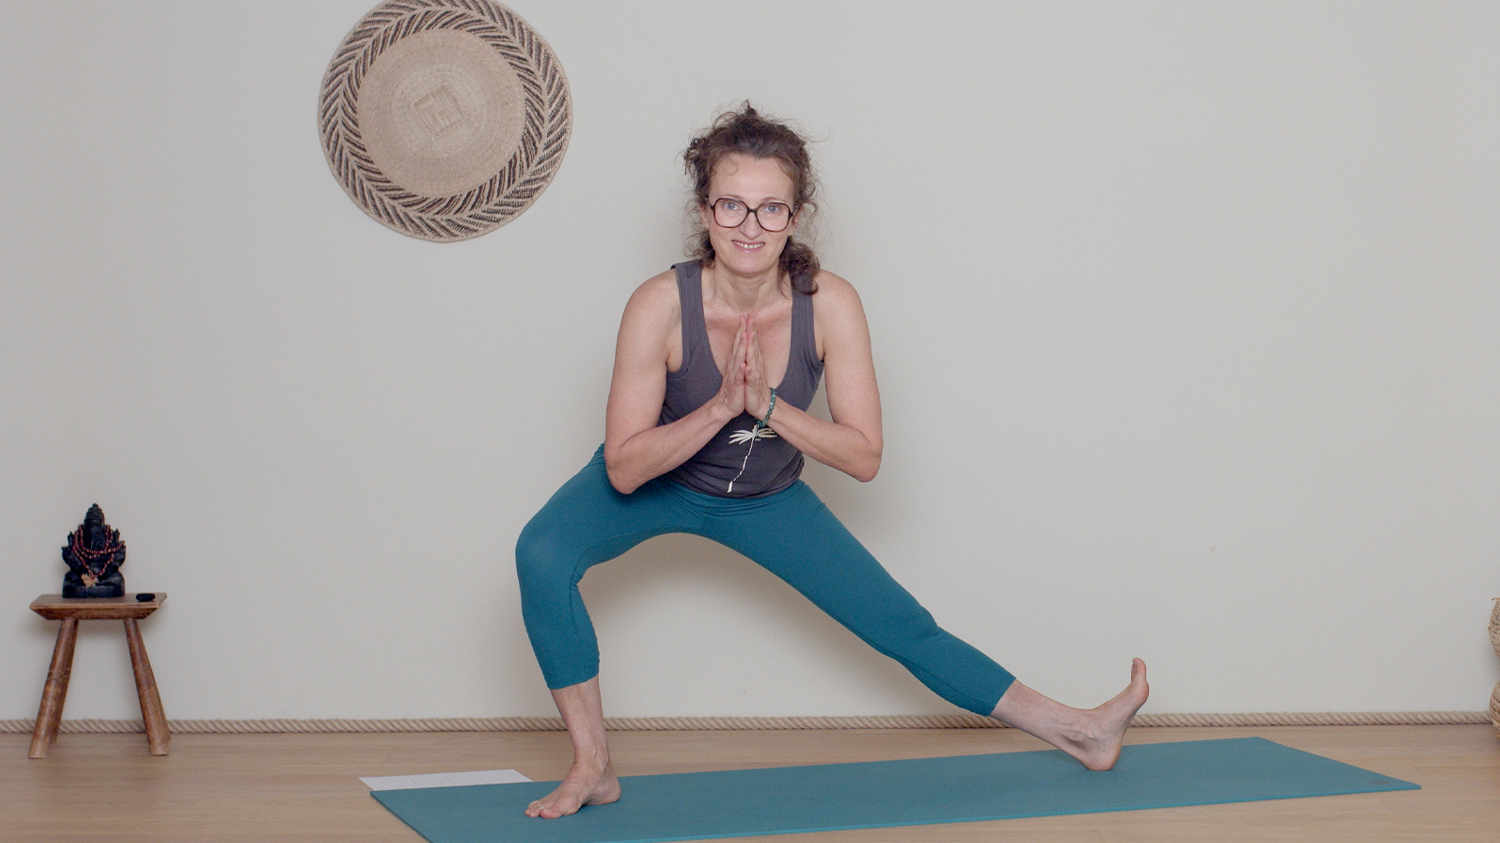 Renforcement musculaire du bas du corps - Intermédiaire | Cours de yoga en ligne avec Delphine Denis | Hatha Yoga dynamique